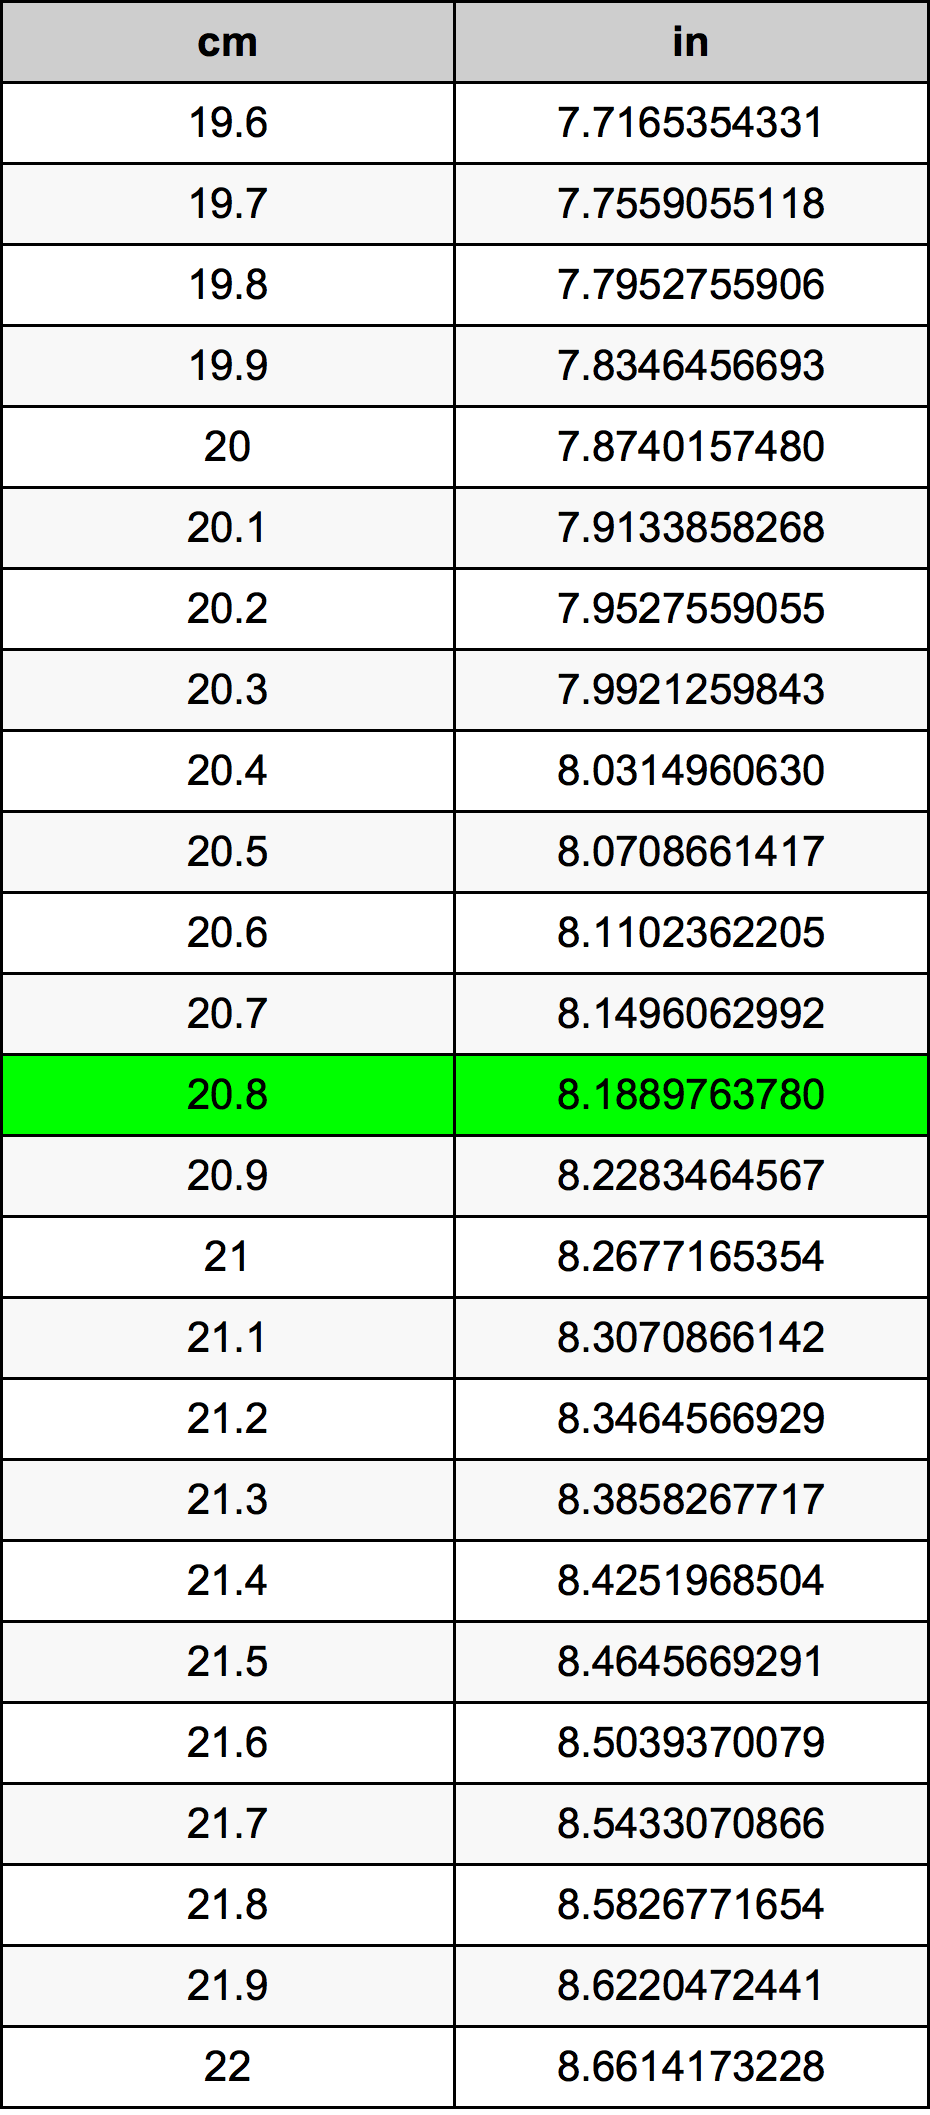 20.8 Centiméter átszámítási táblázat